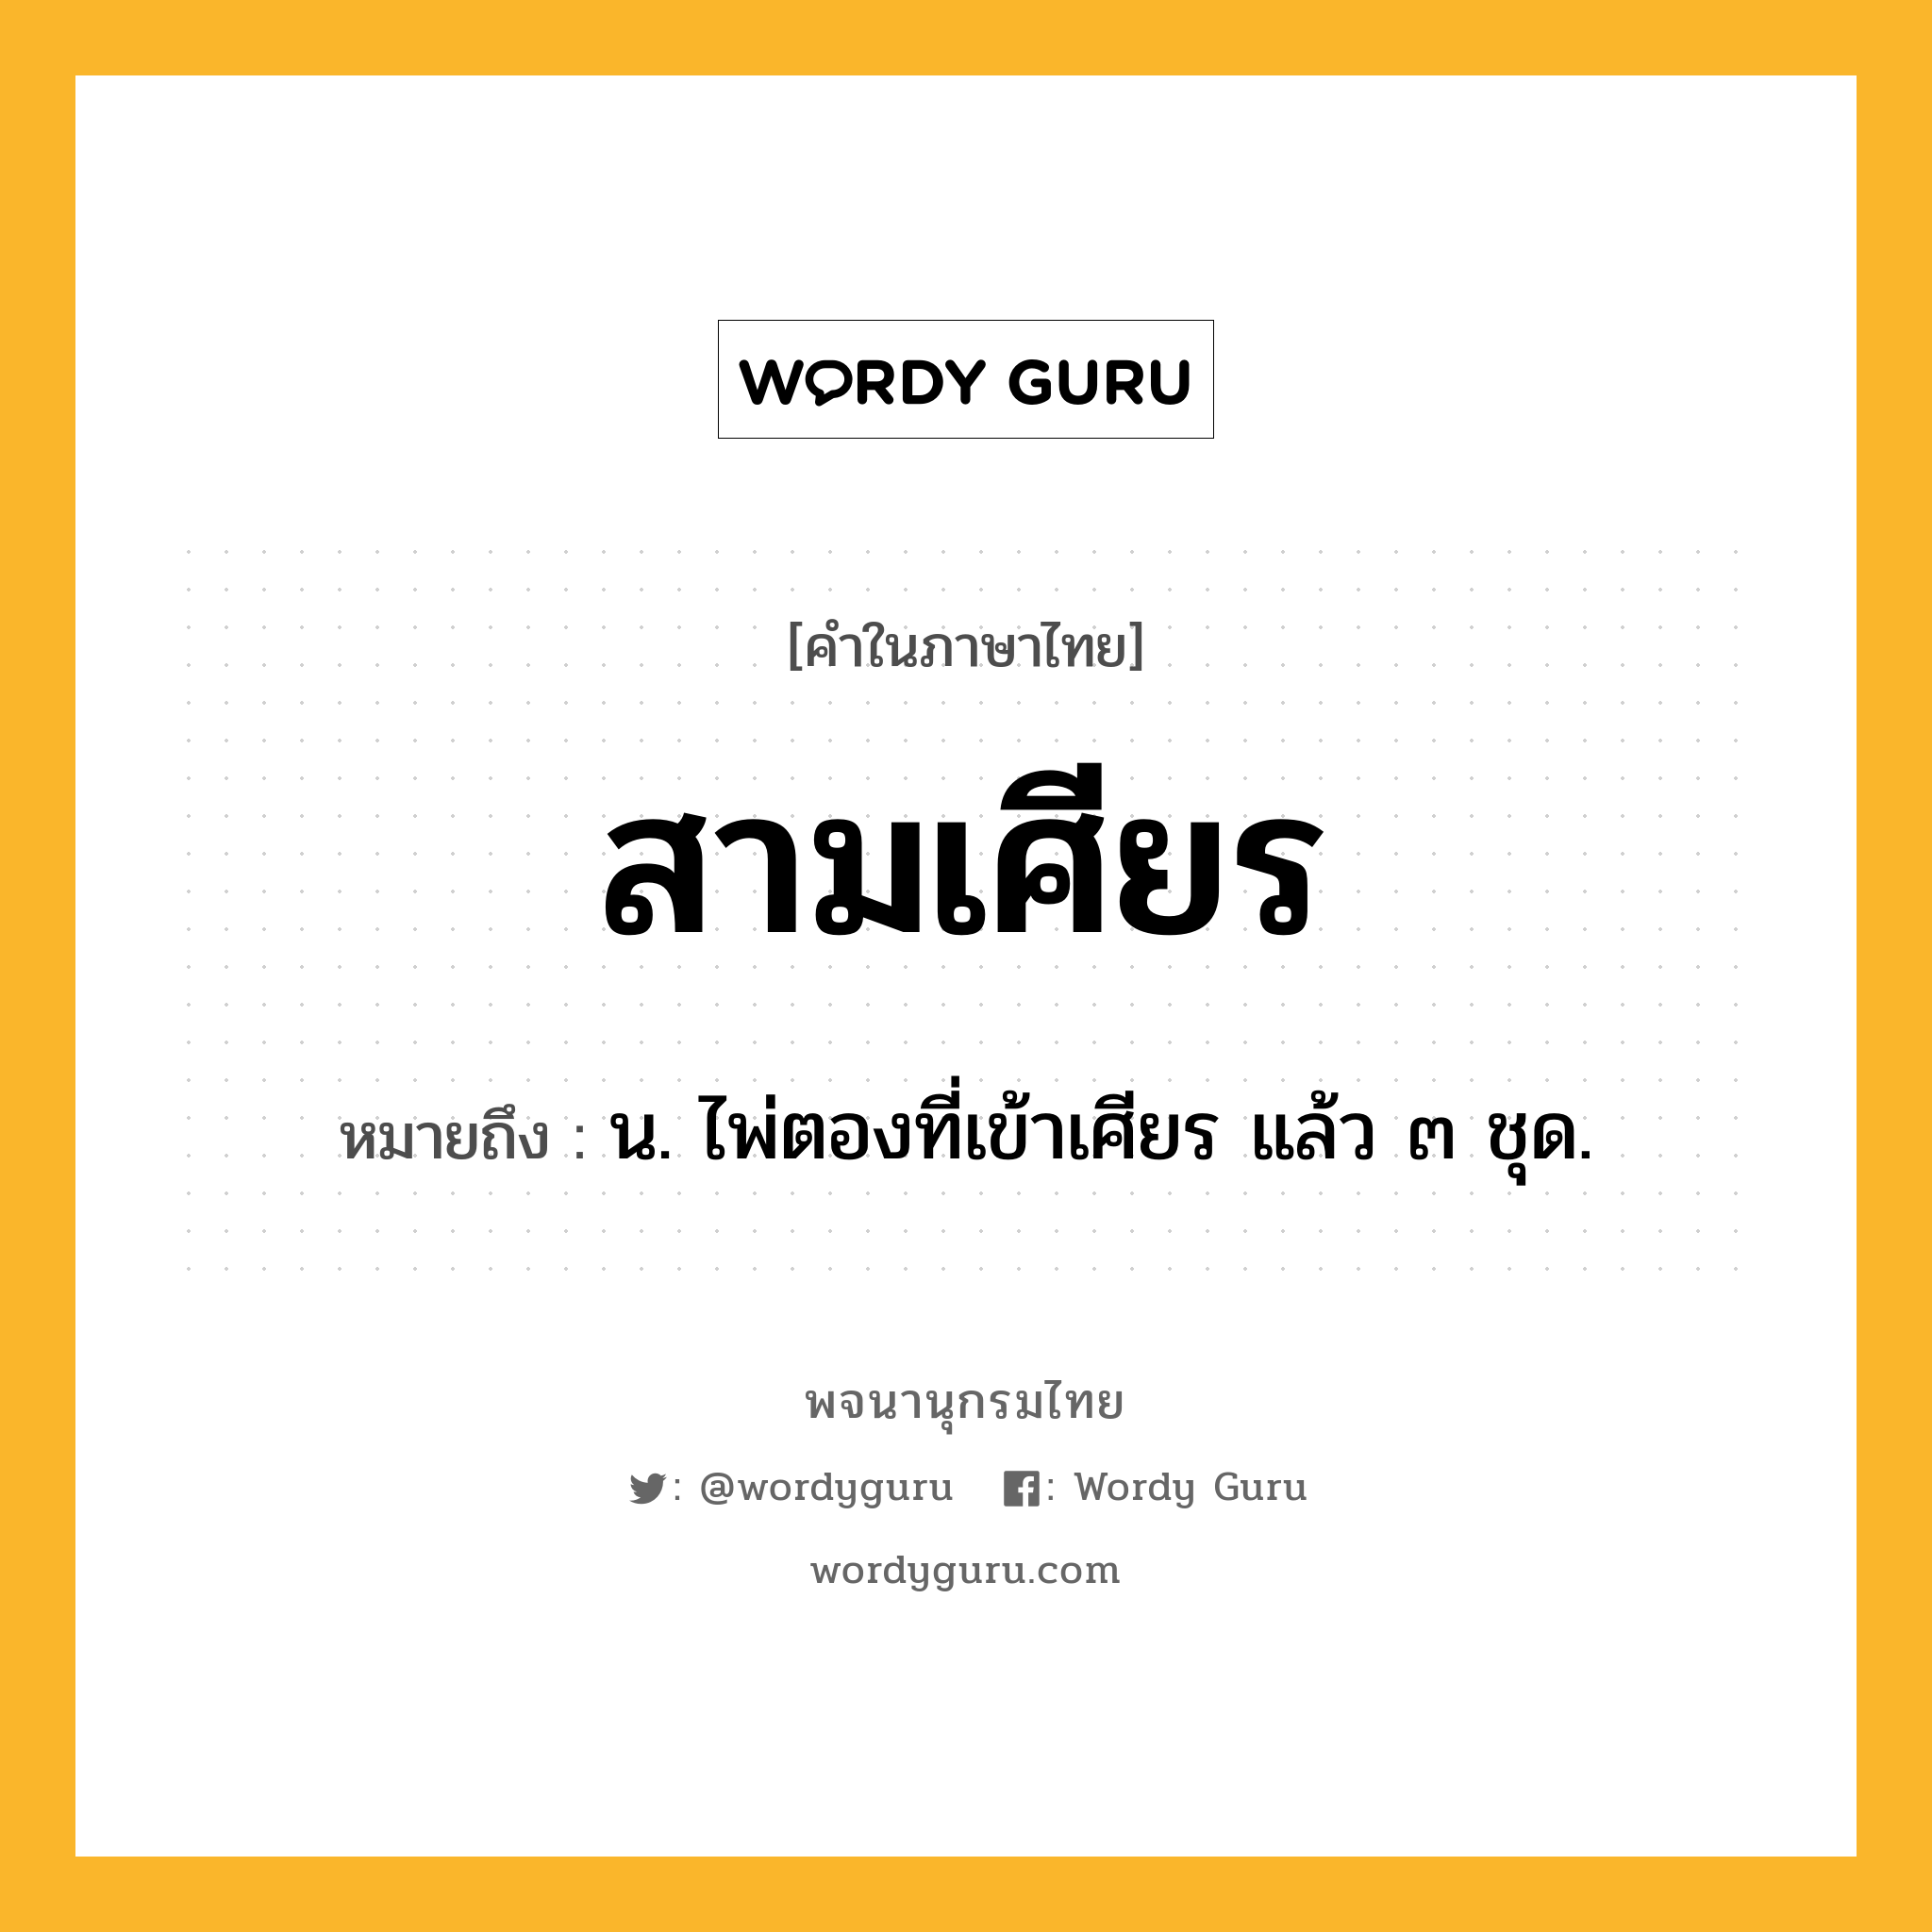 สามเศียร ความหมาย หมายถึงอะไร?, คำในภาษาไทย สามเศียร หมายถึง น. ไพ่ตองที่เข้าเศียร แล้ว ๓ ชุด.